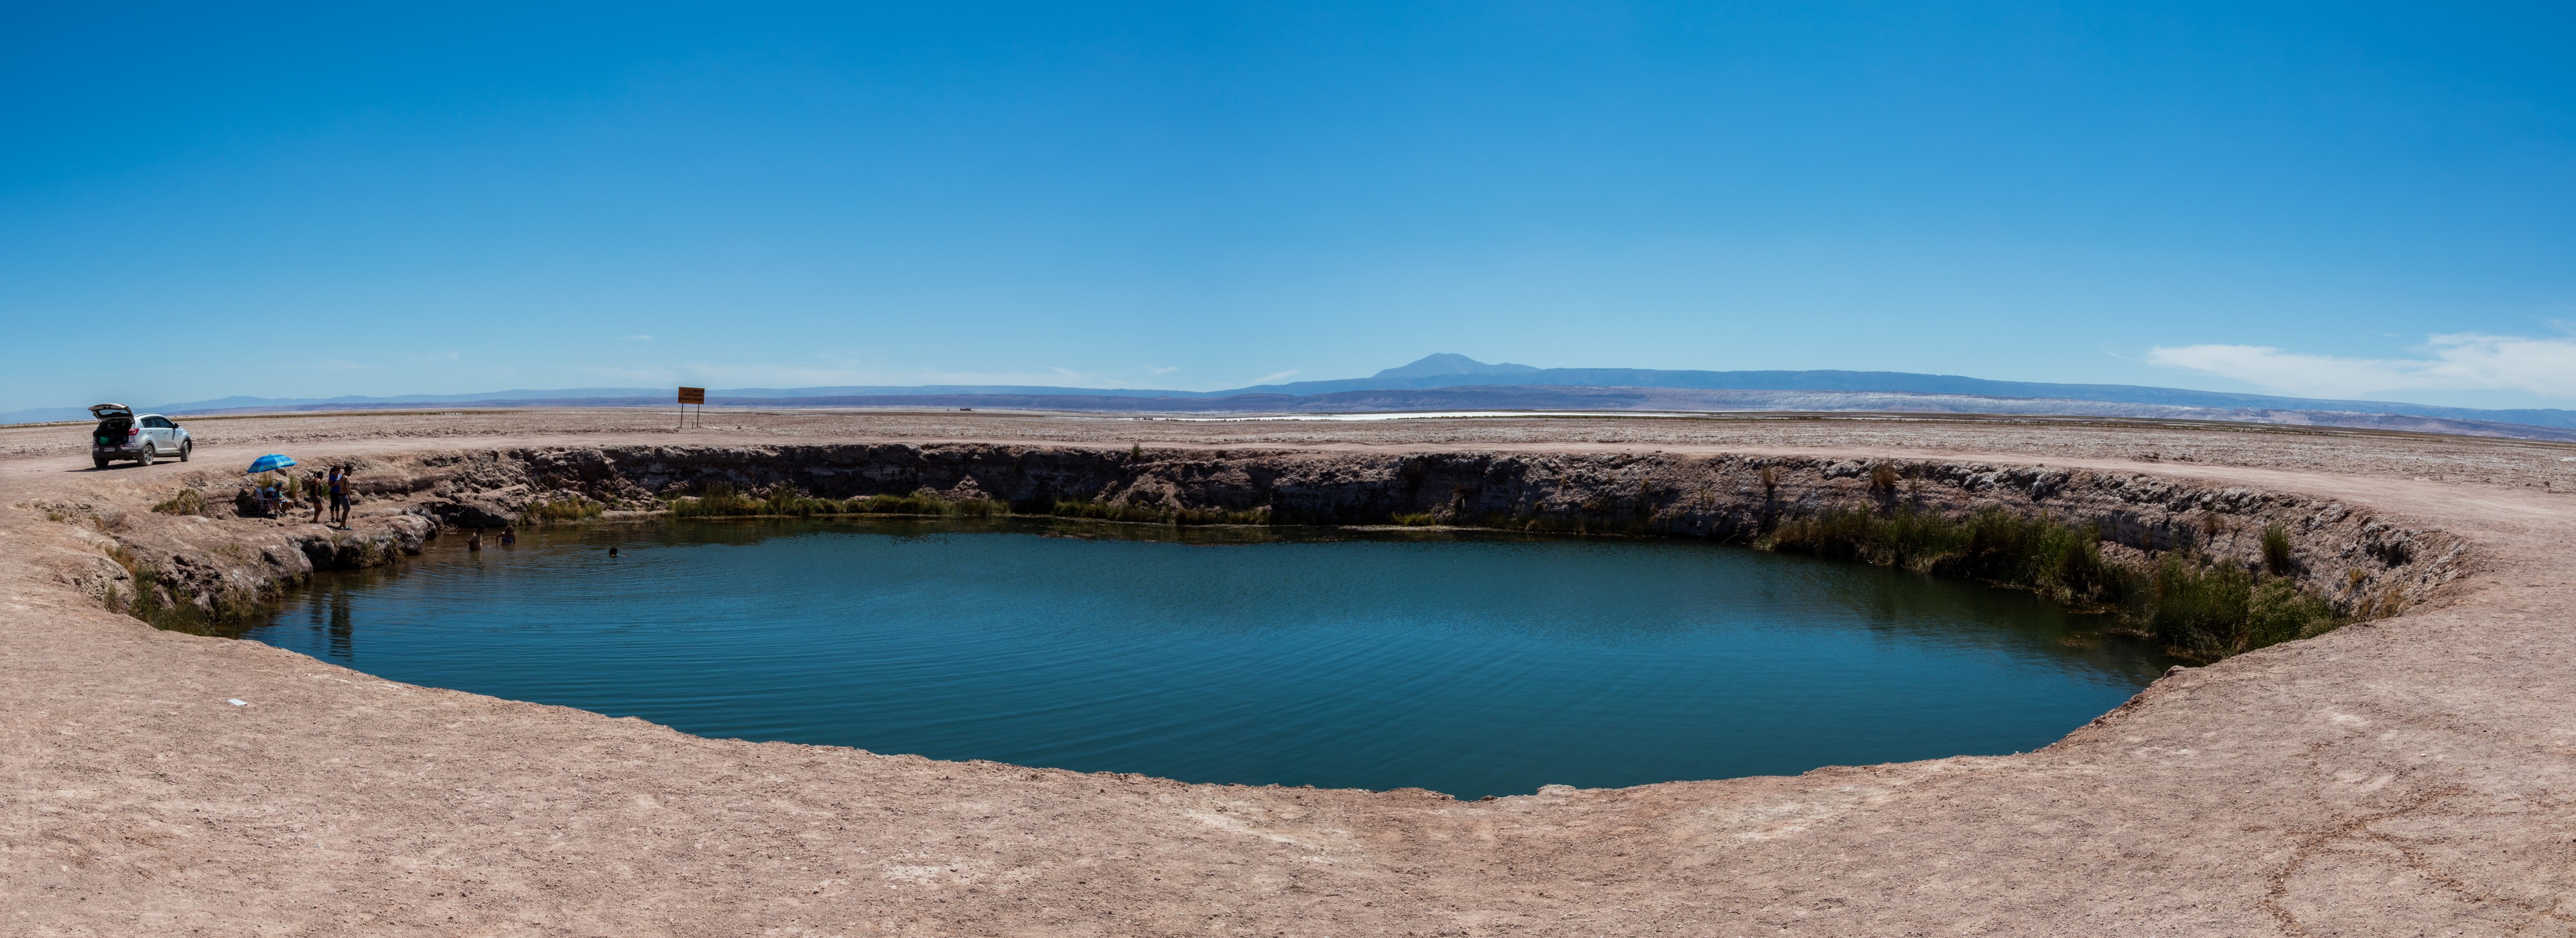 Ojos del Salar, Desierto de Atacama, Chile, 2016-02-06, DD 17-18 PAN